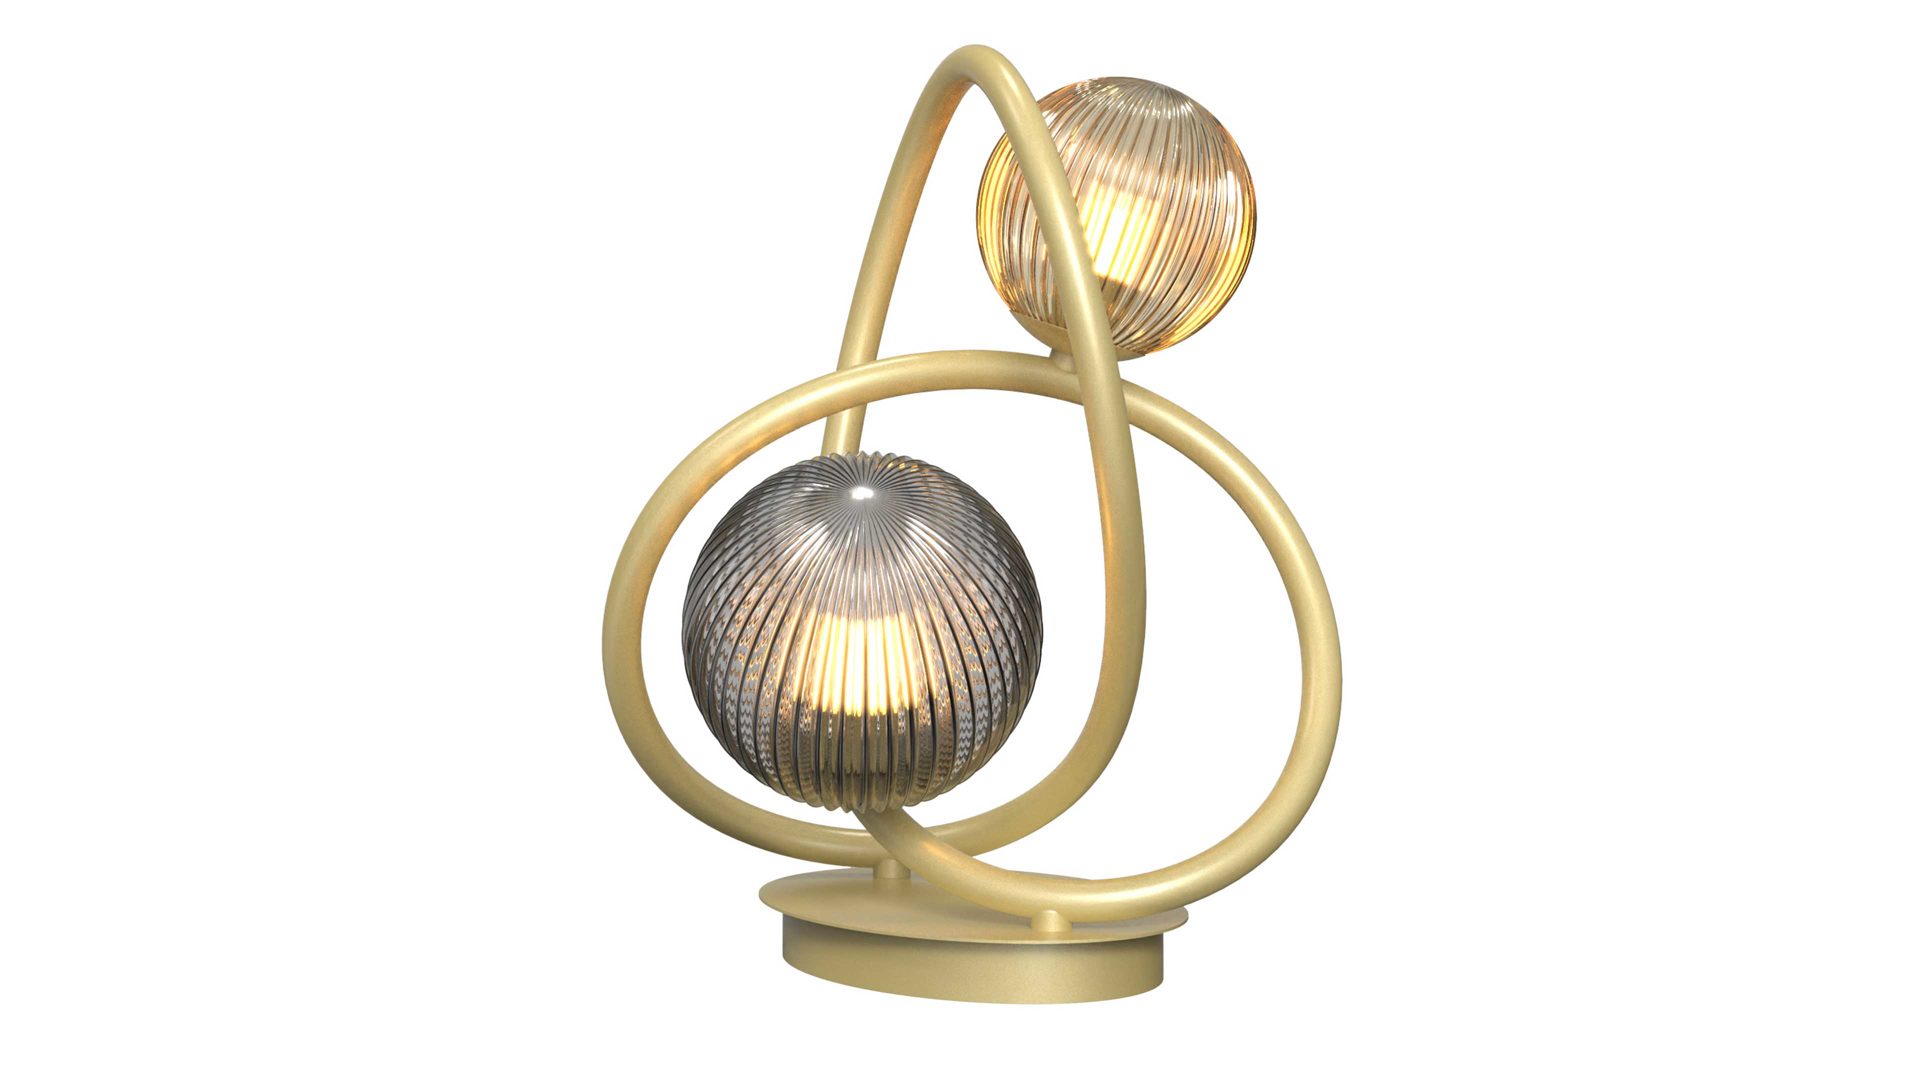 Tischleuchte Global technics aus Glas in Gold Leuchten Serie Metz - Tischlampe Rauch, Bernstein & Gold - Höhe ca. 32 cm